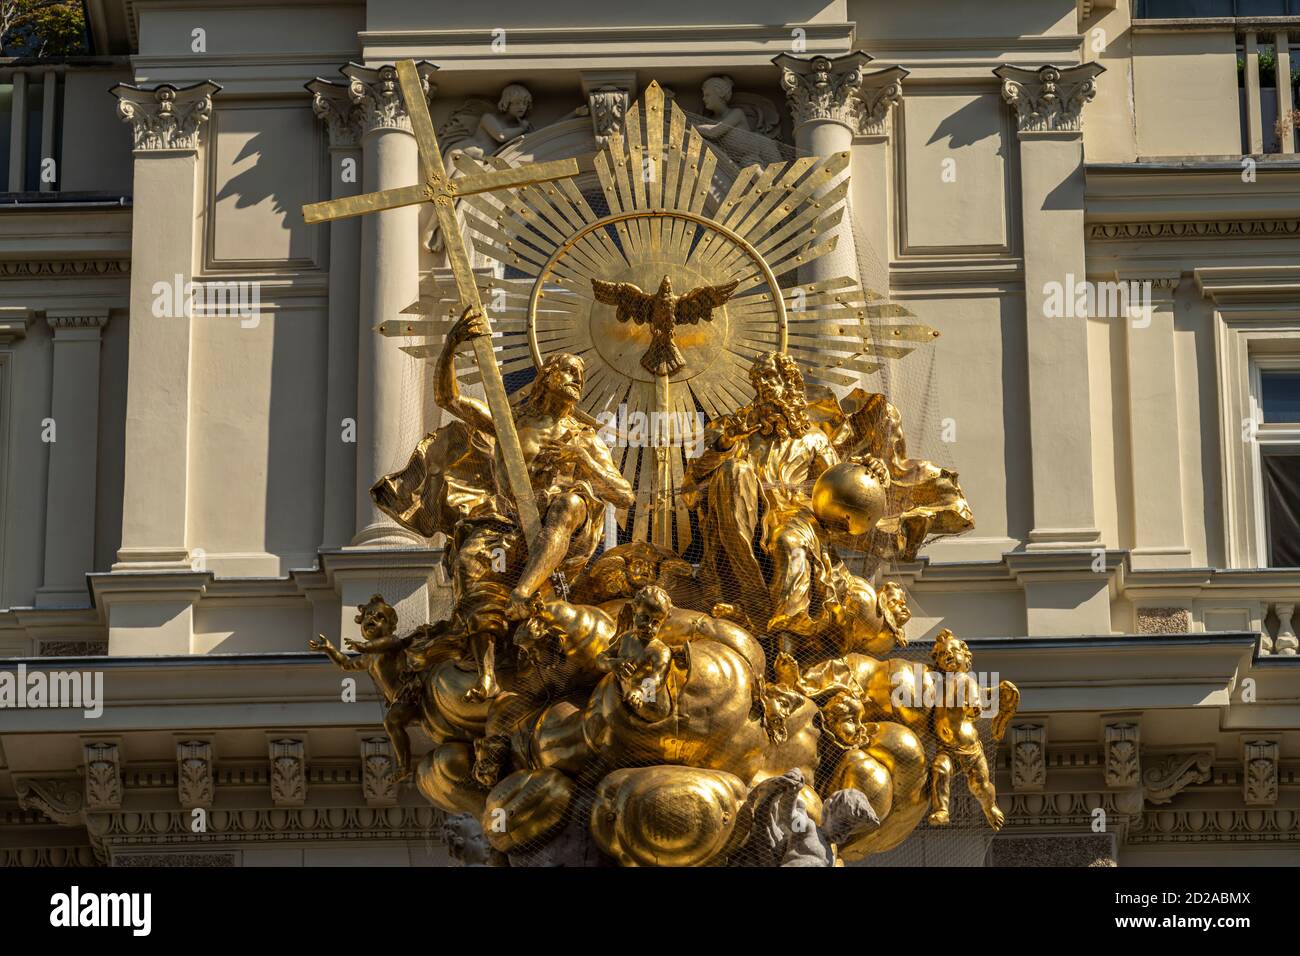 Goldene Spitze der Wiener Pestsäule, Wien, Österreich, Europa | Golden Top of the Plague Column, Vienne, Autriche, Europe Banque D'Images